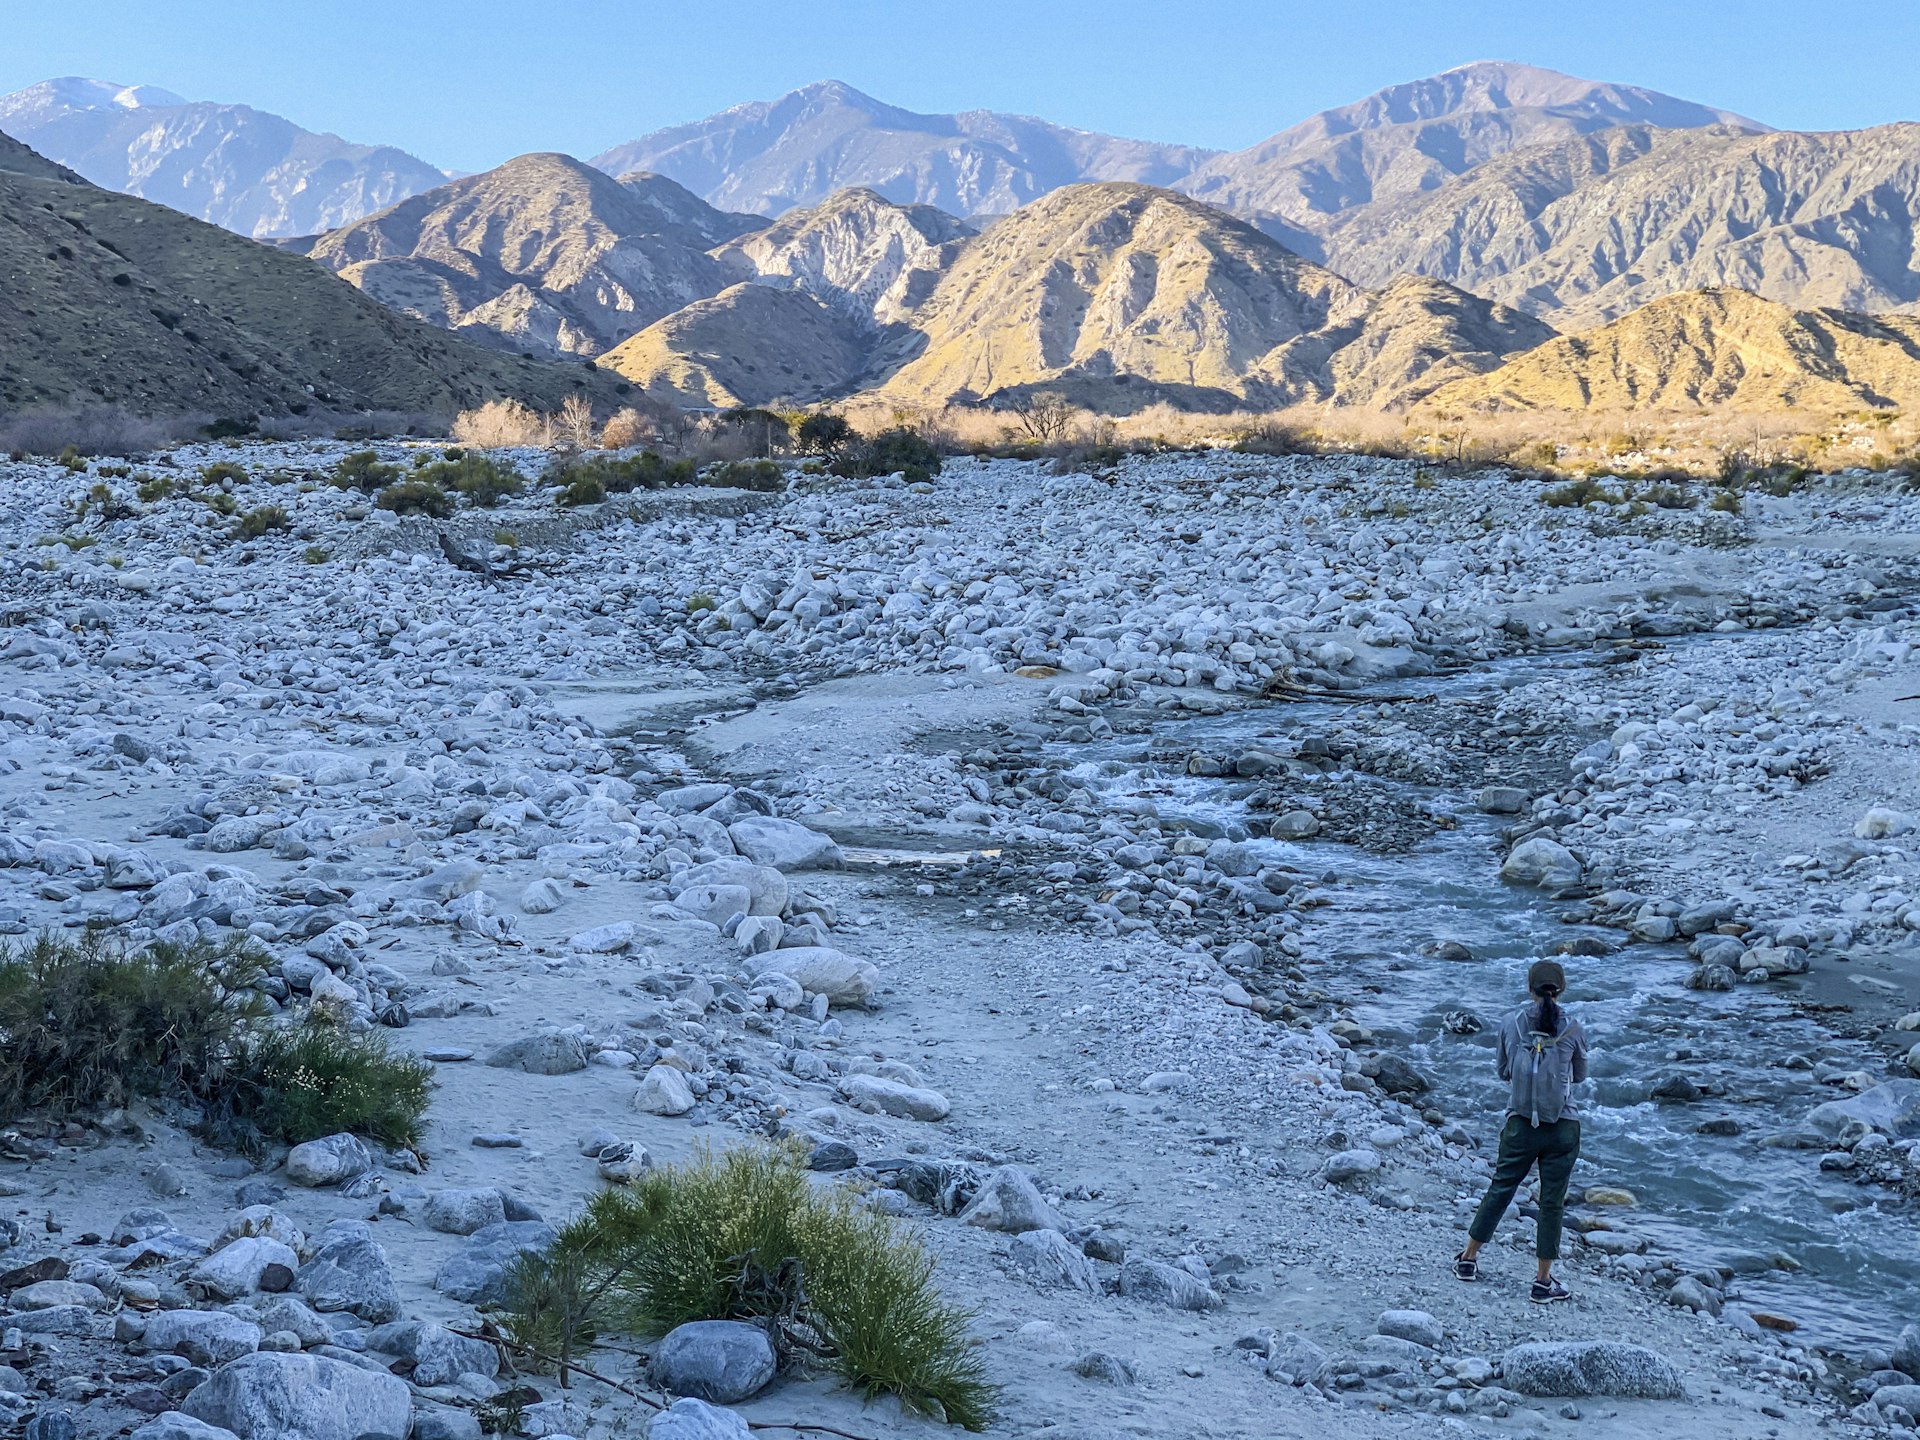 Woman hiker in a rocky landscape near a fast-flowing stream looking towards a mountain range